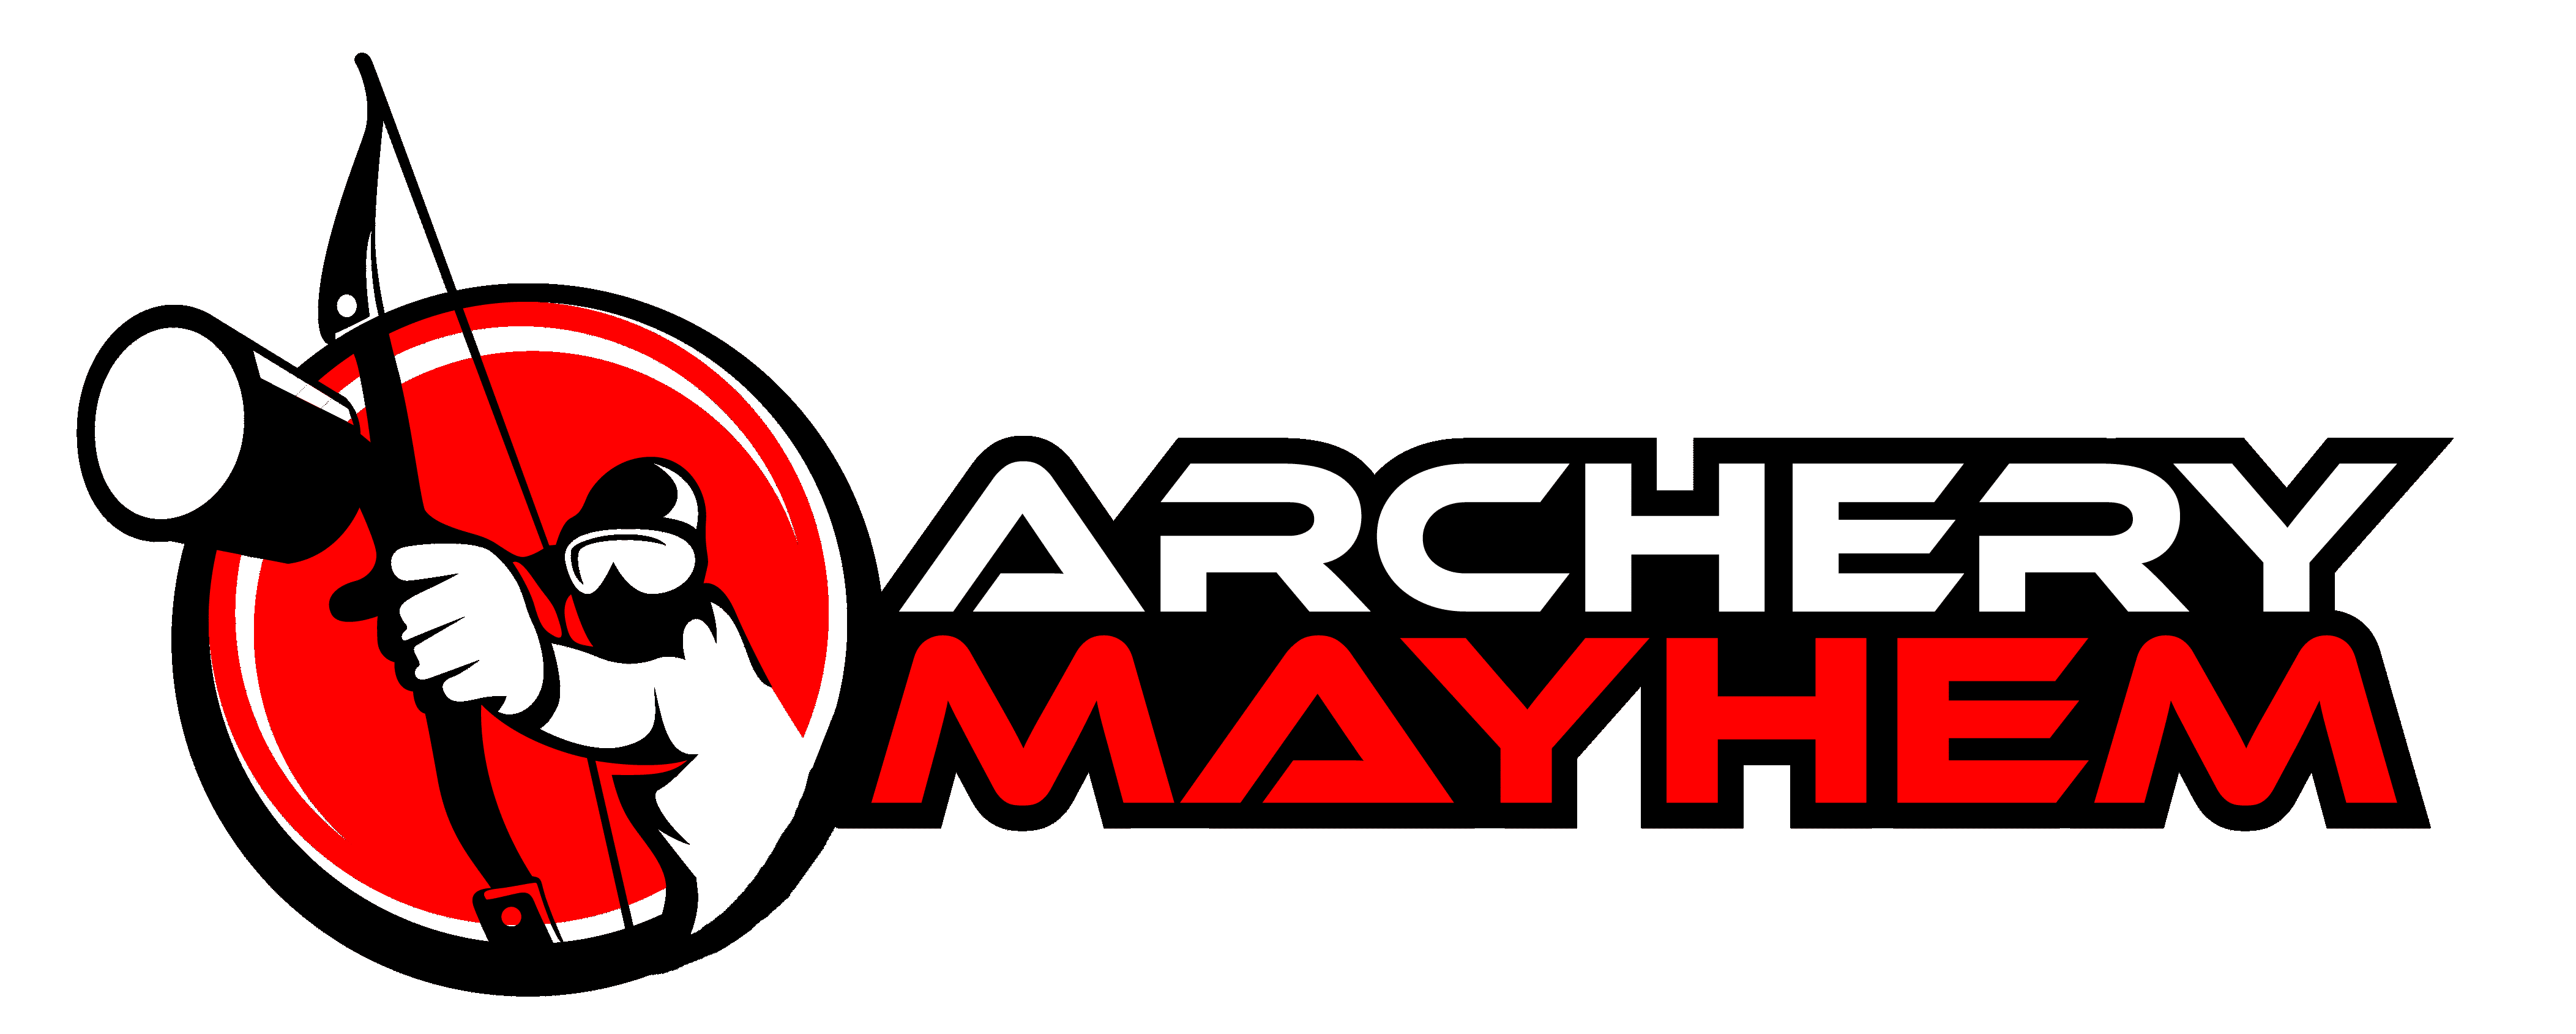 Archery Mayhem Logo